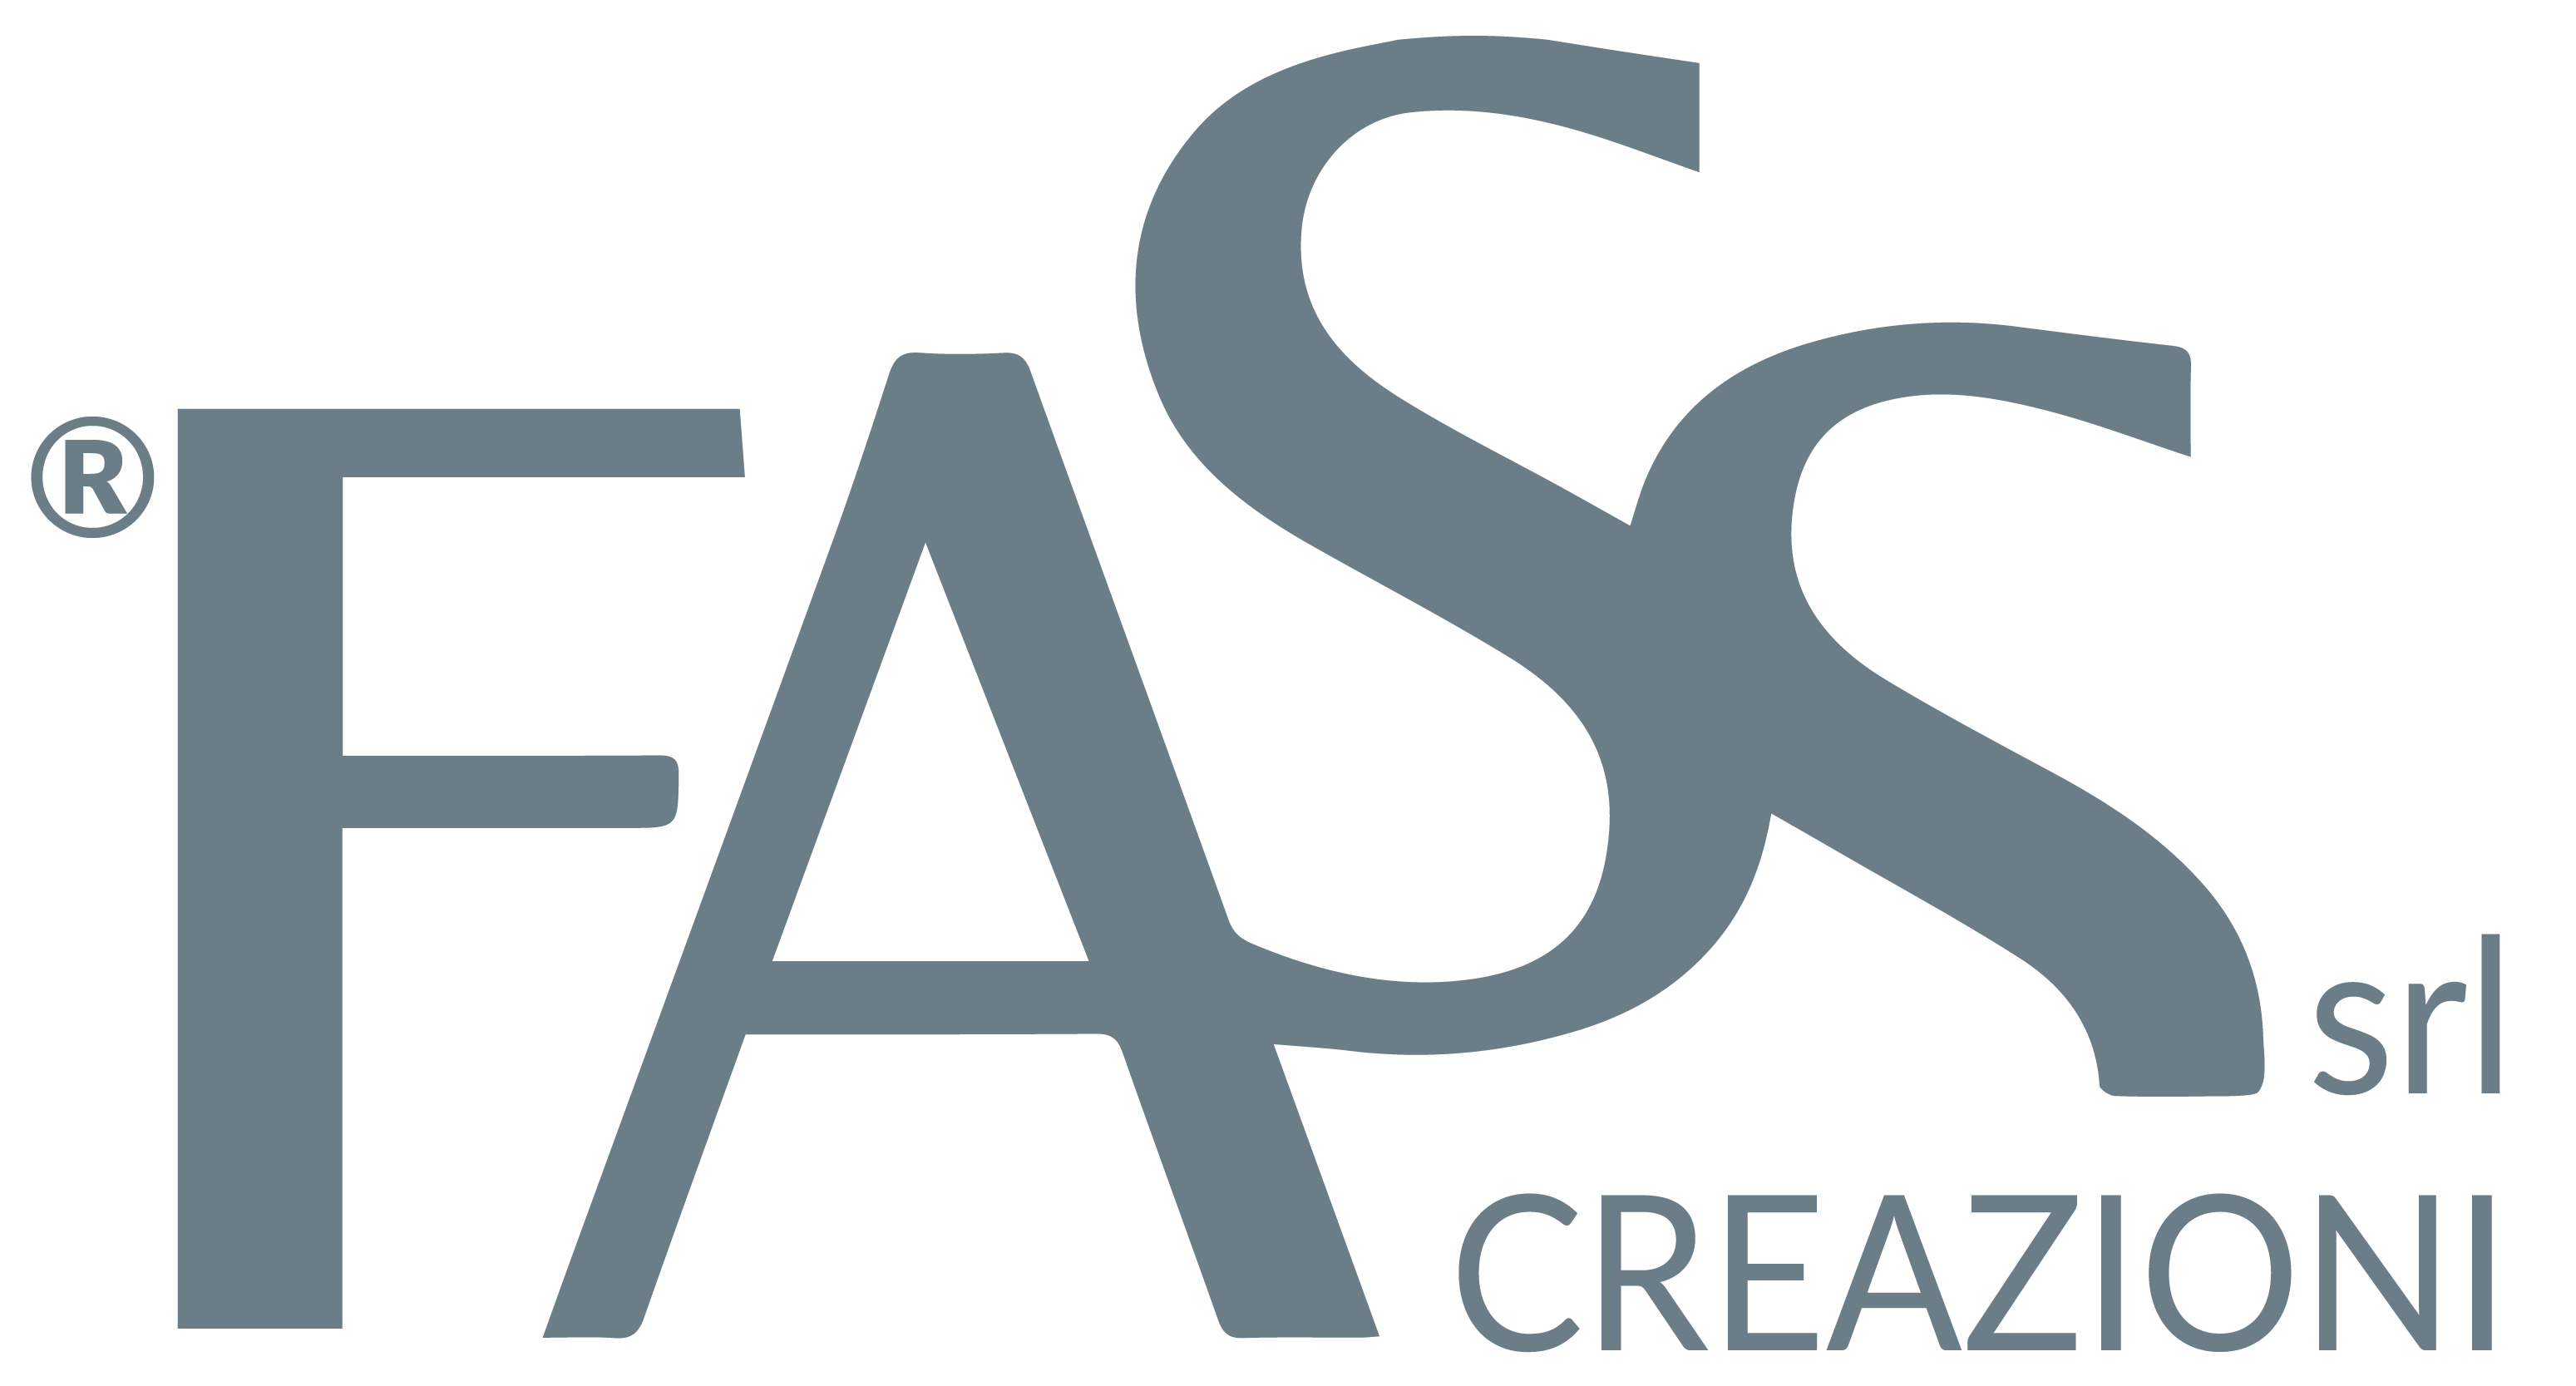 Creazioni Fass - Logo